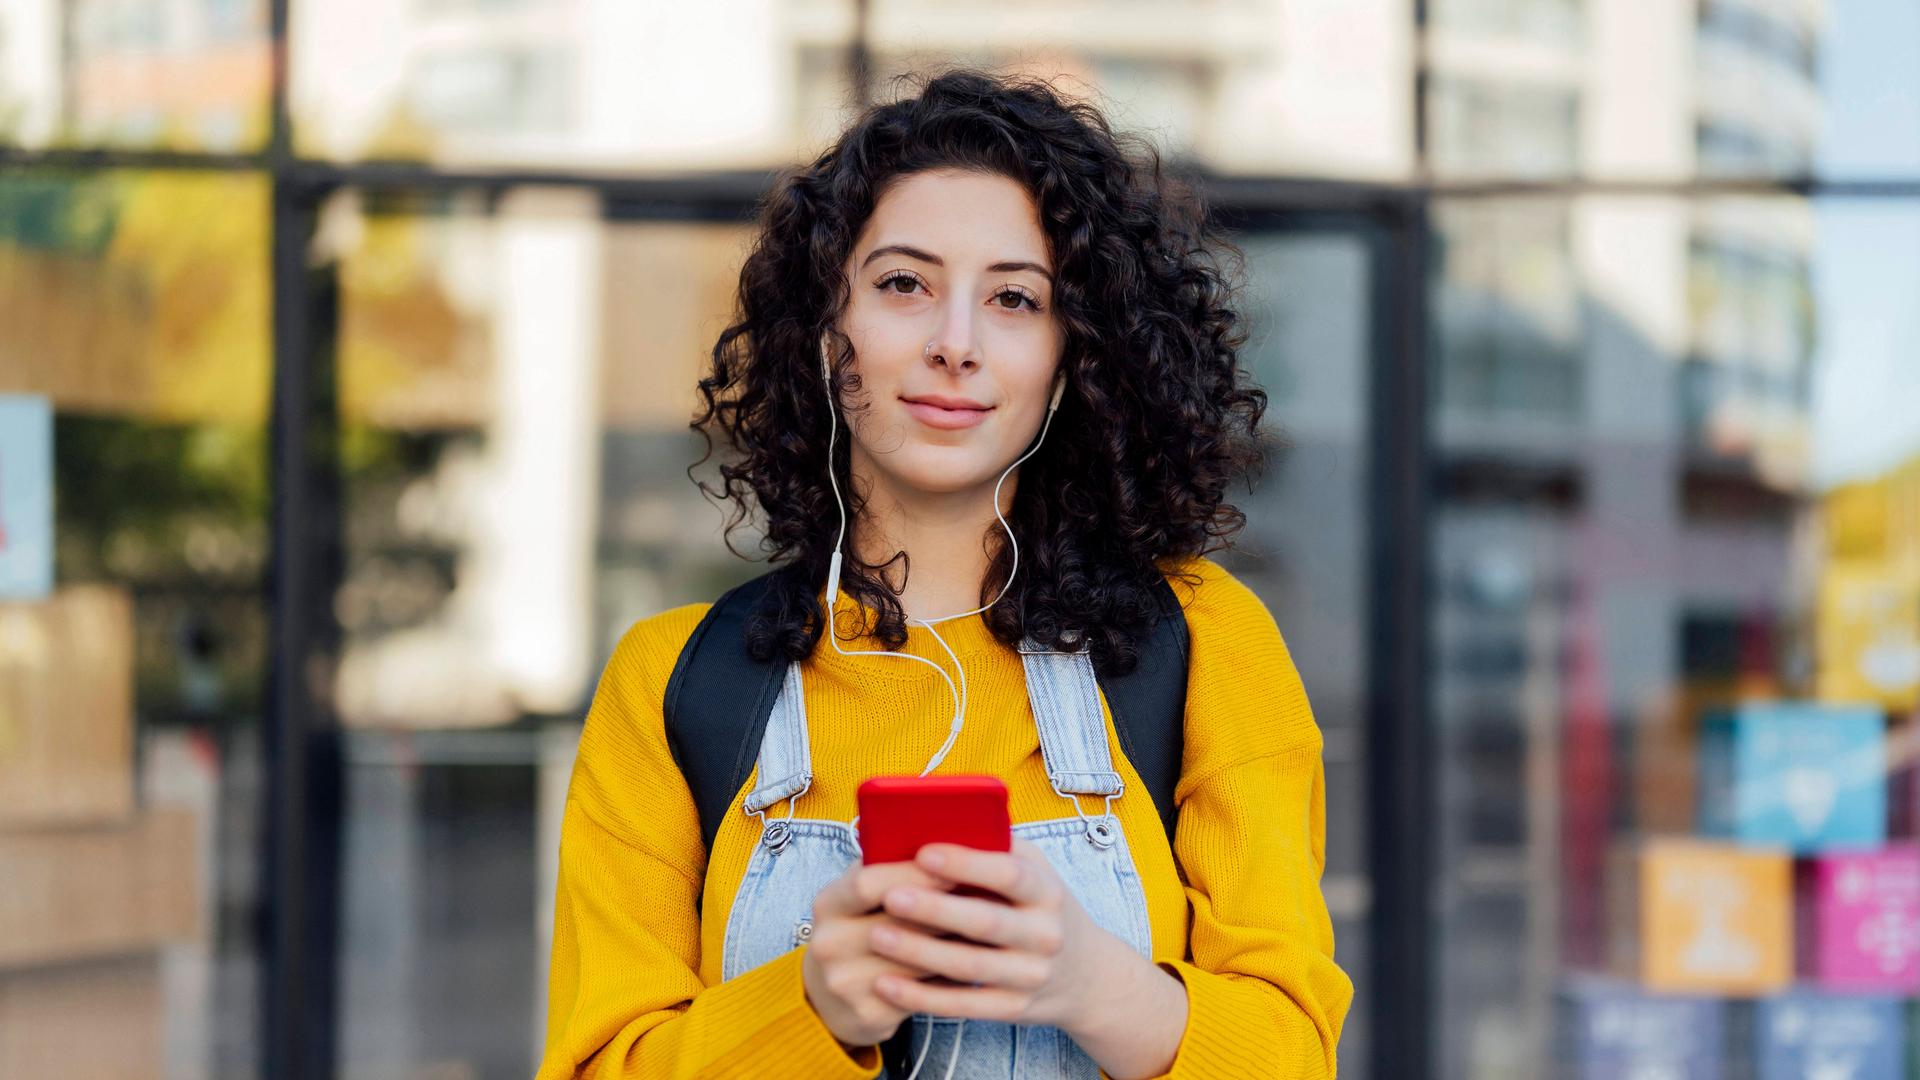 Eine junge Frau hat Kopfhörer auf, die mit ihrem Smartphone verbunden sind, das sie in der Hand hält